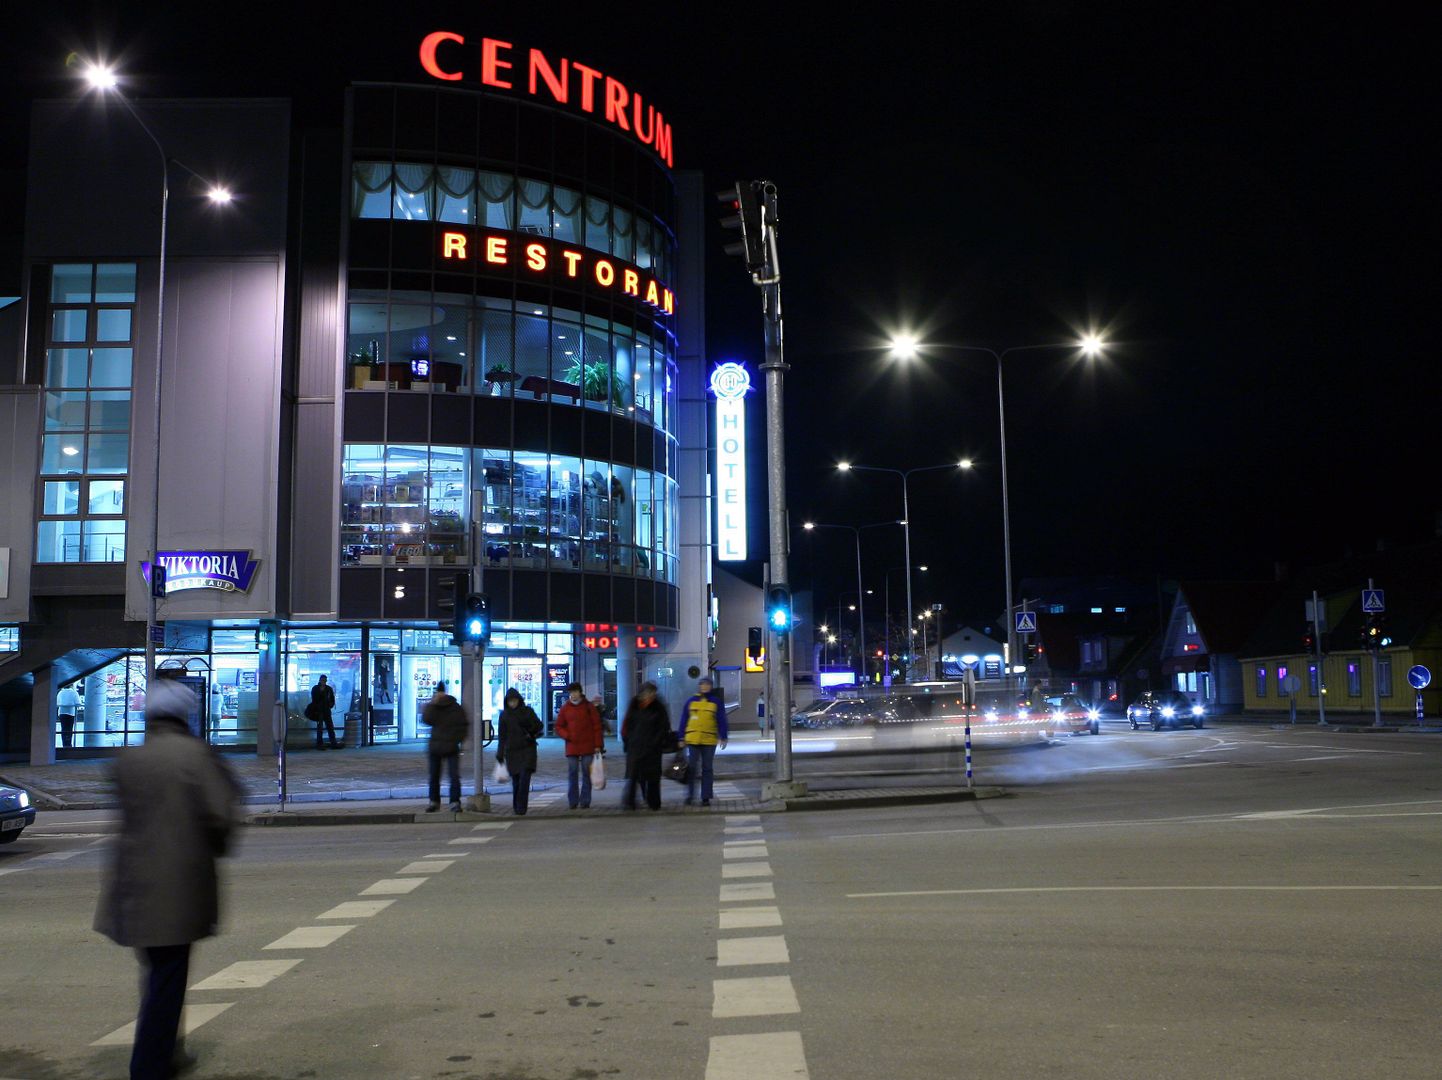 Kaks Viljandi meest väidavad, et turvatöötajad kiusasid neid Centrumi keskuses.